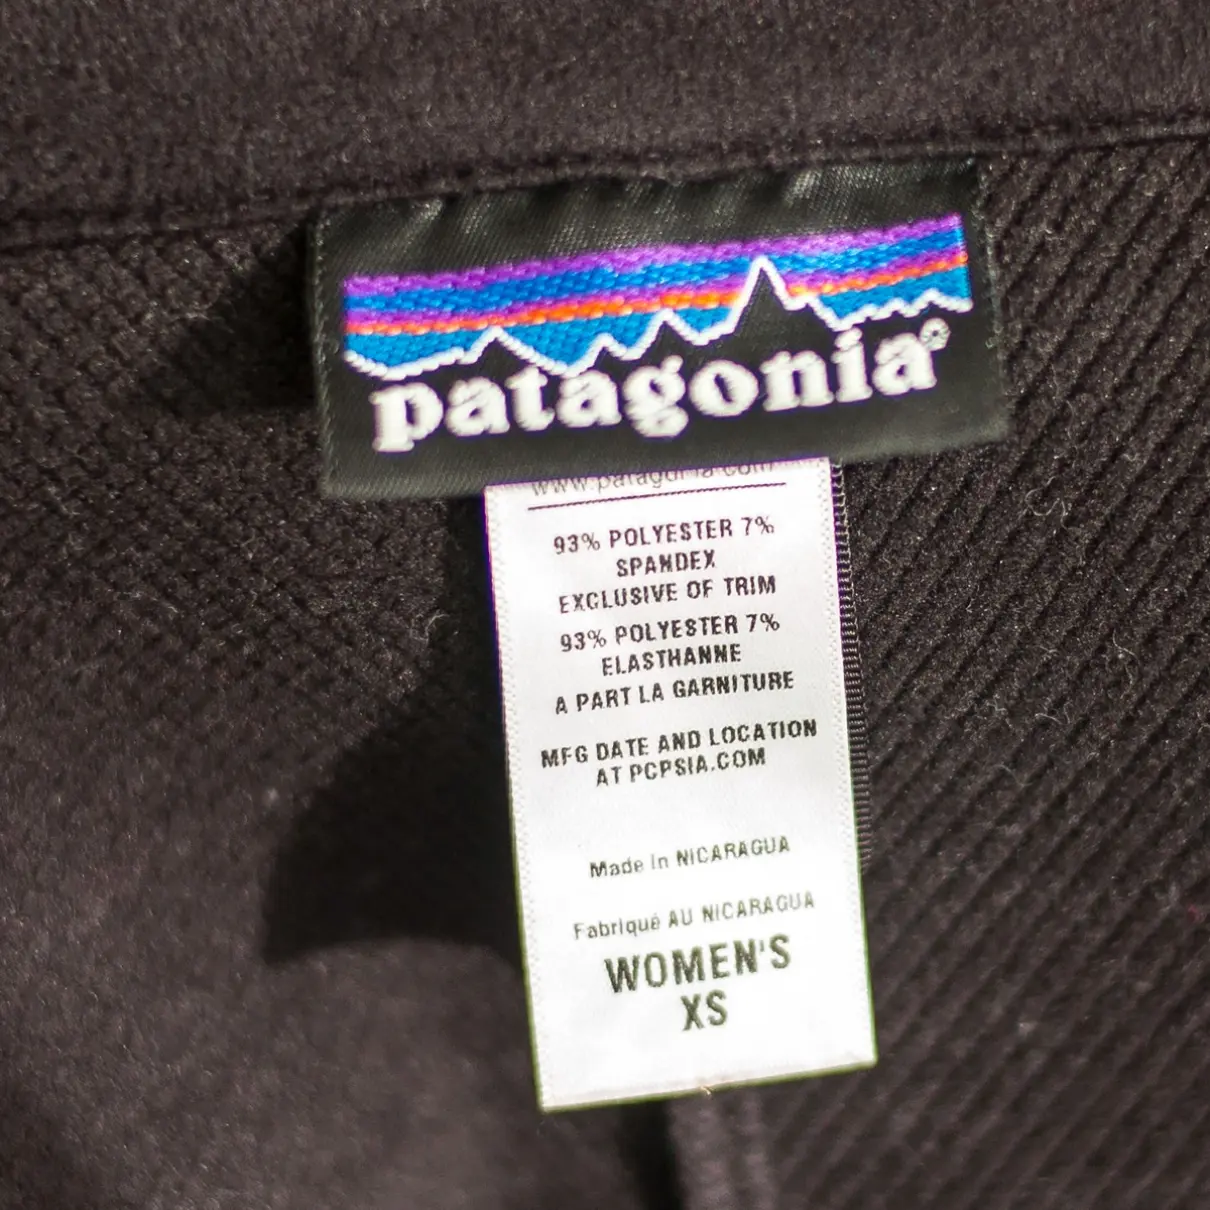 Buy Patagonia Jacket online